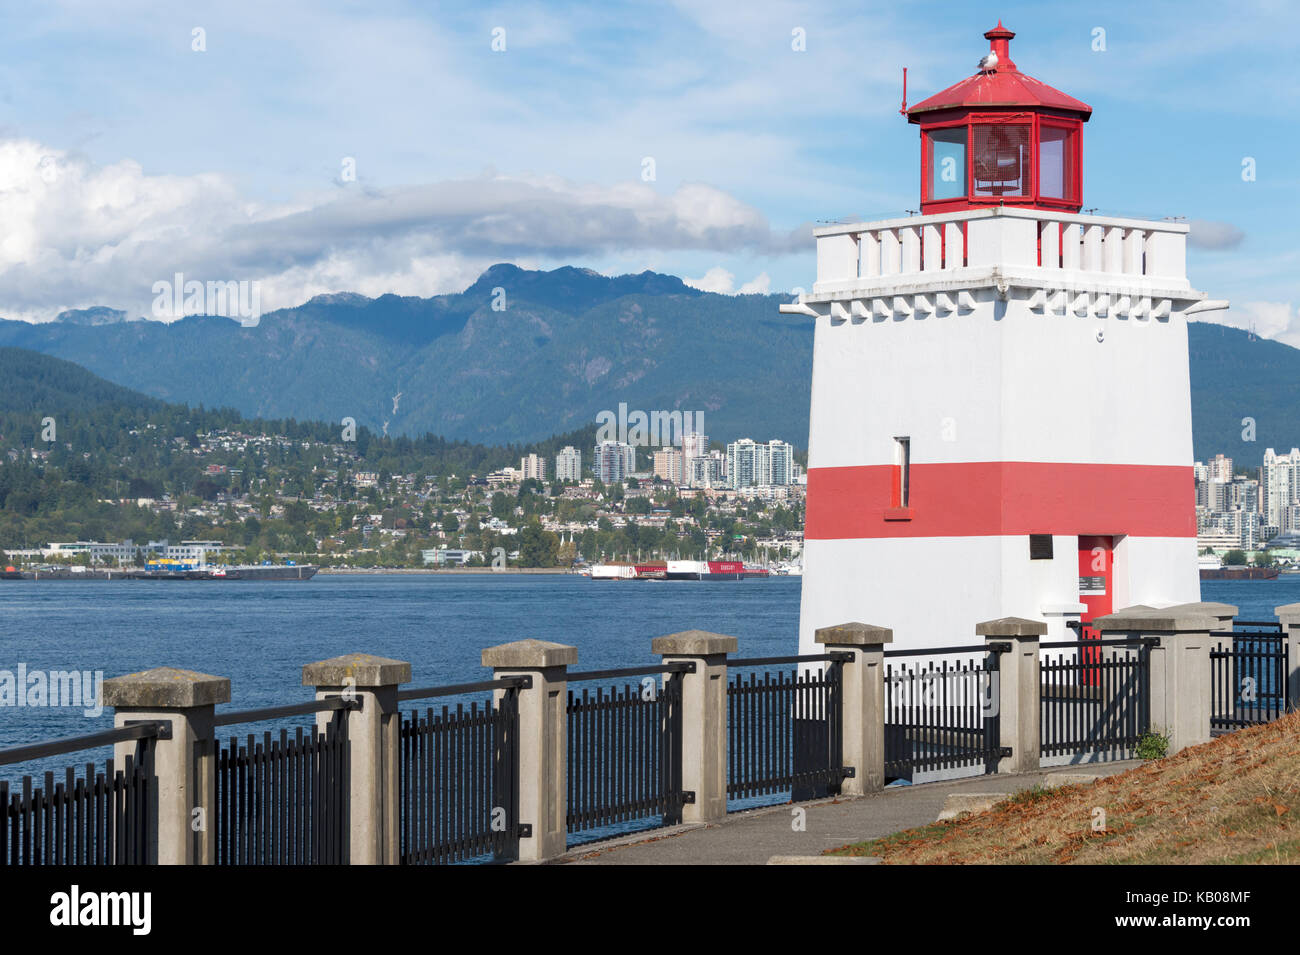 Vancouver, Colombie-Britannique, Canada - 12 septembre 2017 : Brockton Point Lighthouse dans Stanley Park Banque D'Images